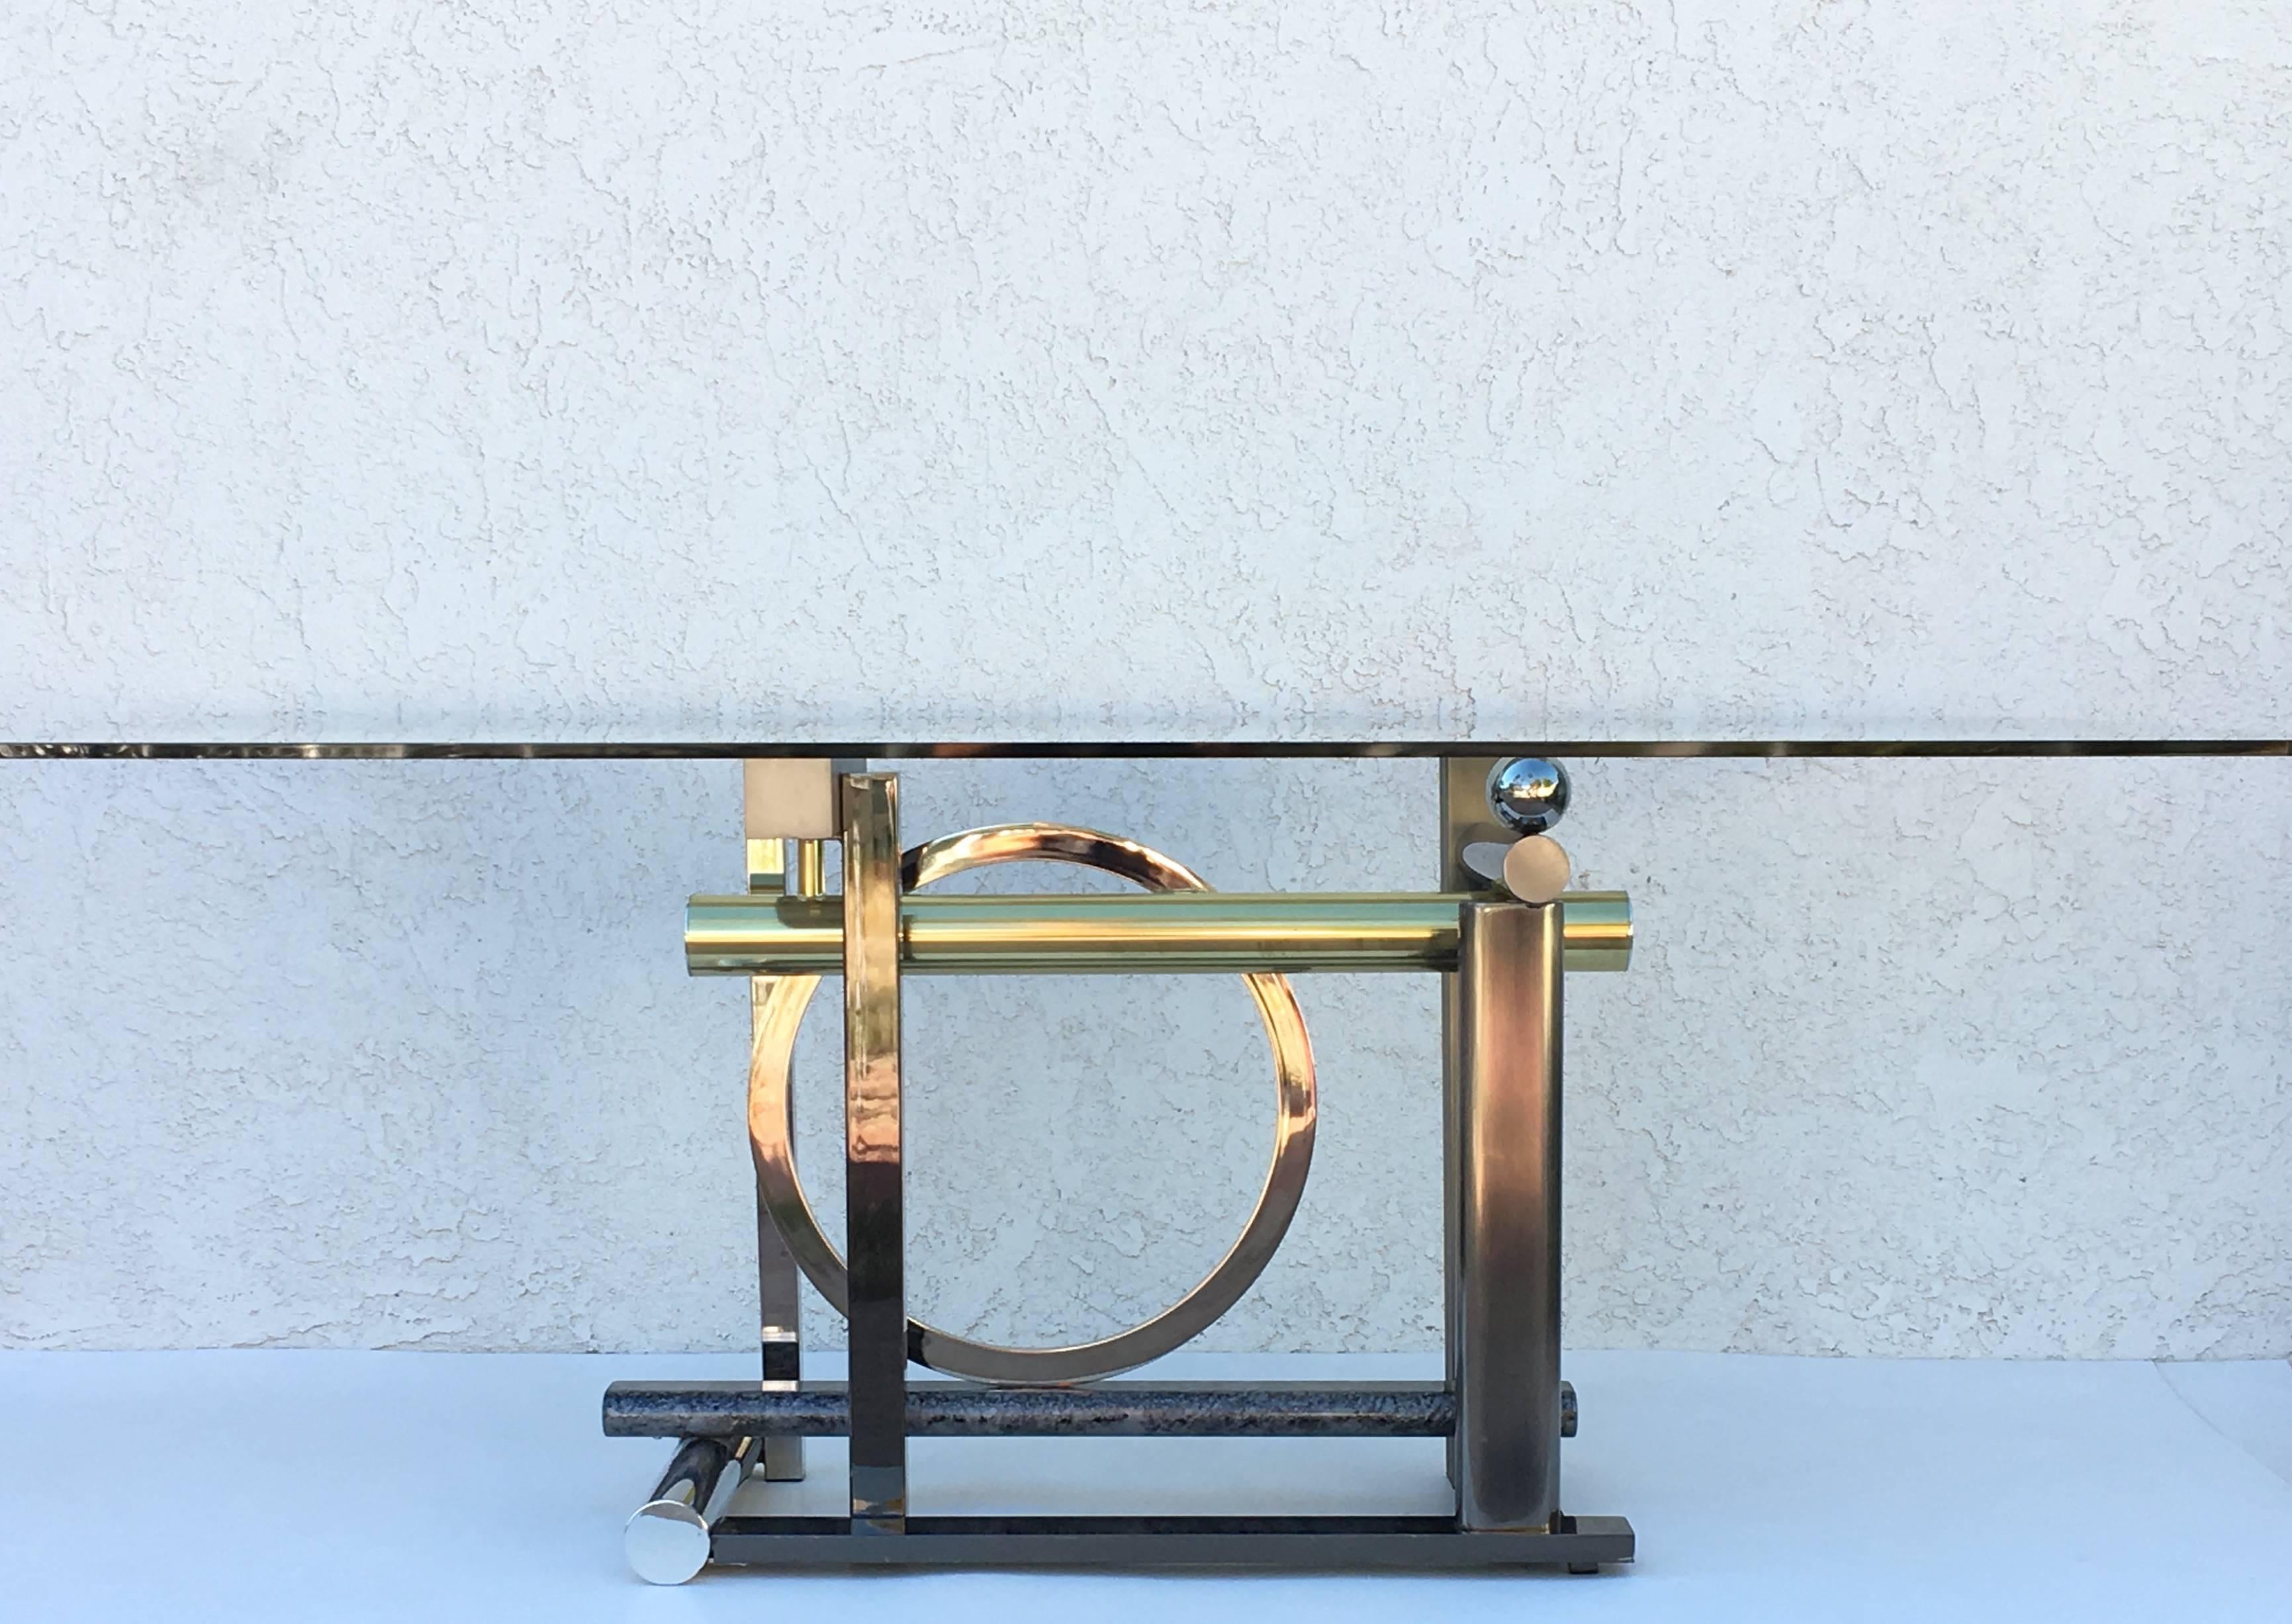 Una escultural mesa de comedor o escritorio postmoderna diseñada por Rick Lee para el Design Institute America en 1993

La base está hecha de una mezcla de metales (latón, cromo, acero inoxidable cepillado, bronce de cañón y muchos otros